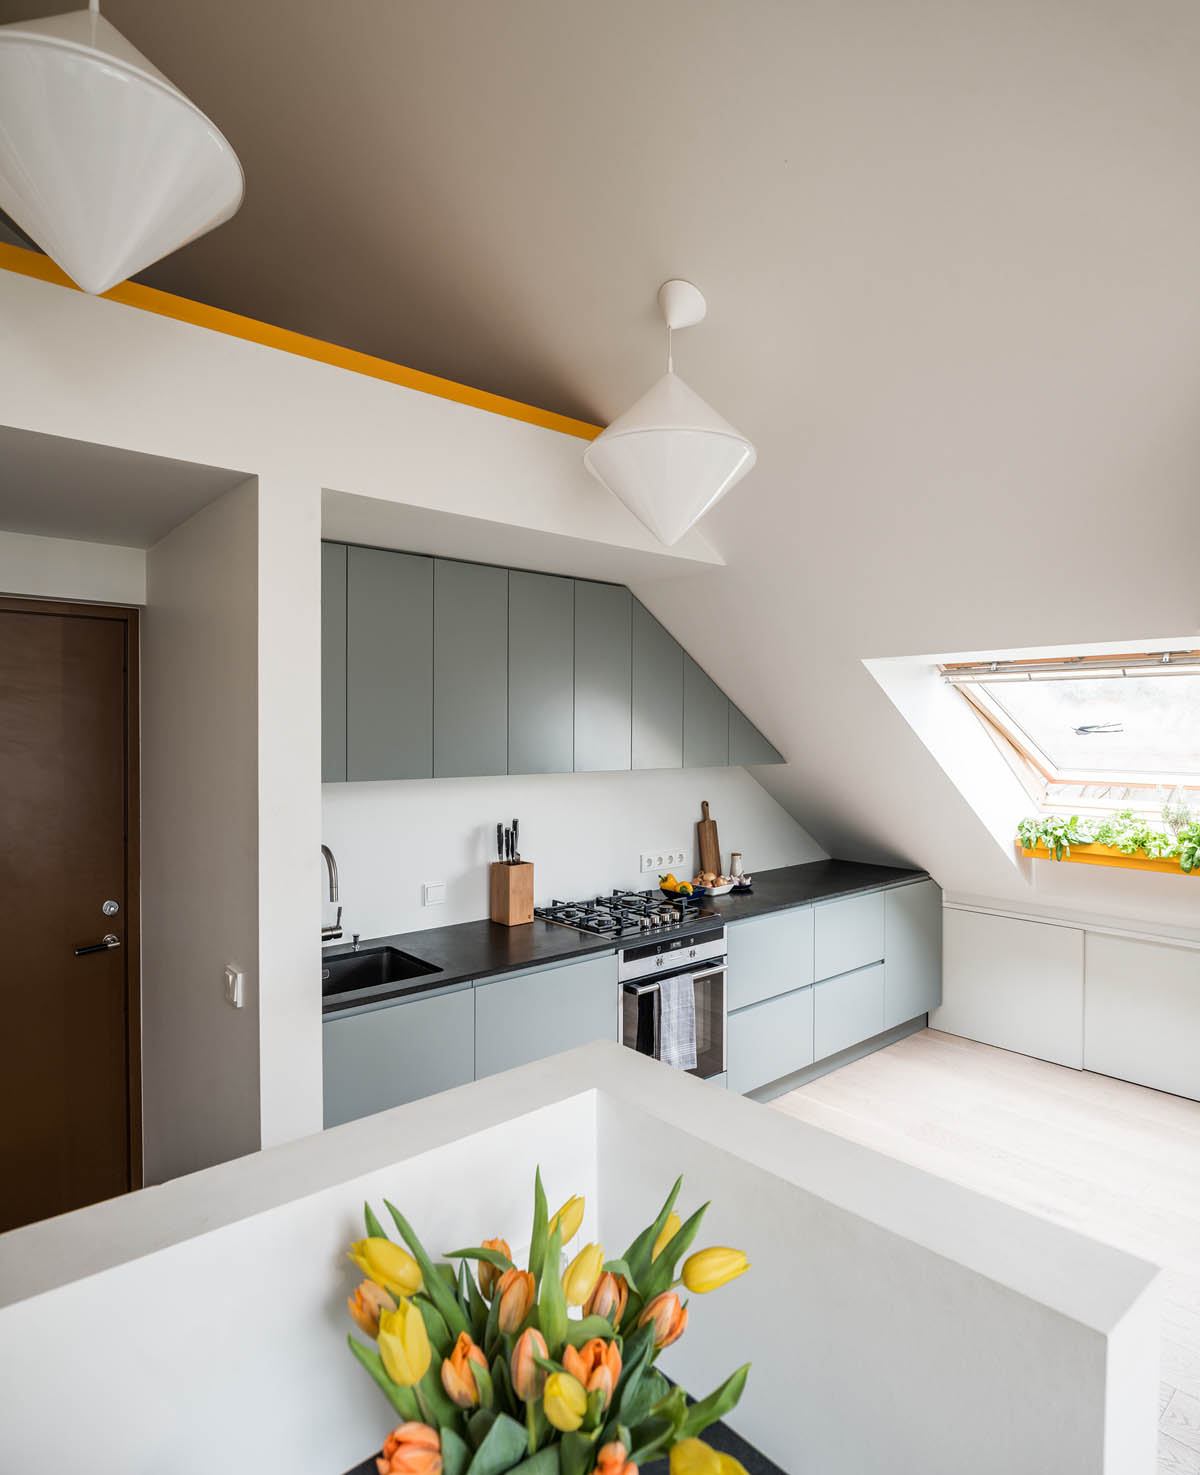 Area kolong tangga atau ceiling juga bisa dimanfaatkan untuk dapur lho!